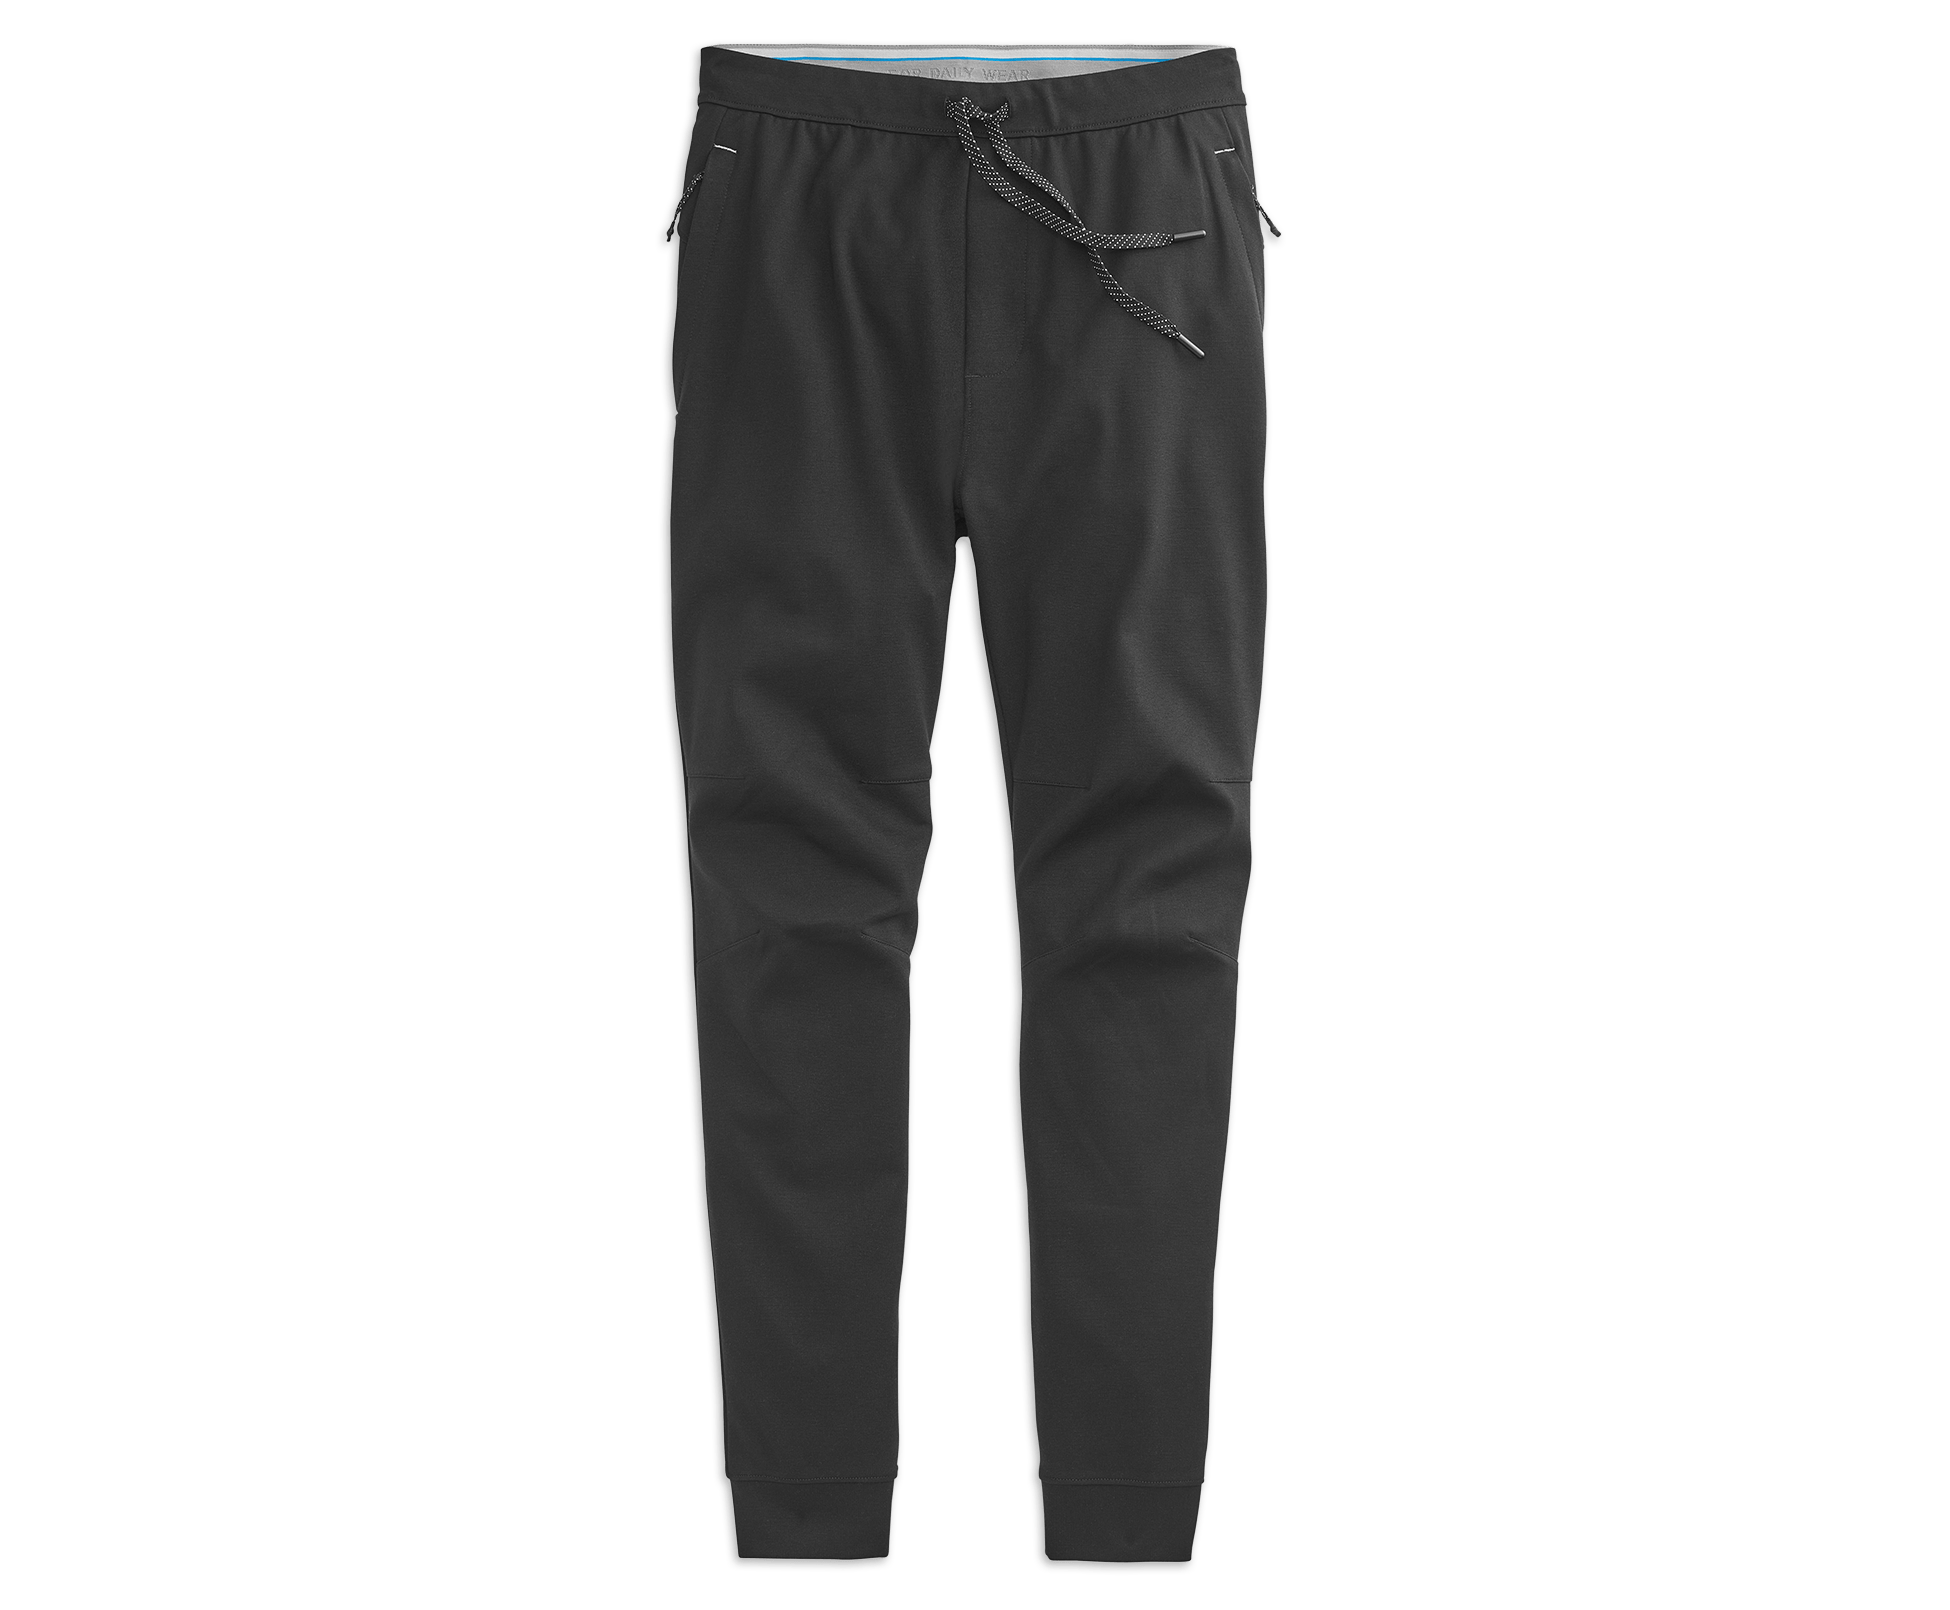   Essentials Men's Slim-Fit Jogger Pant, Black, X